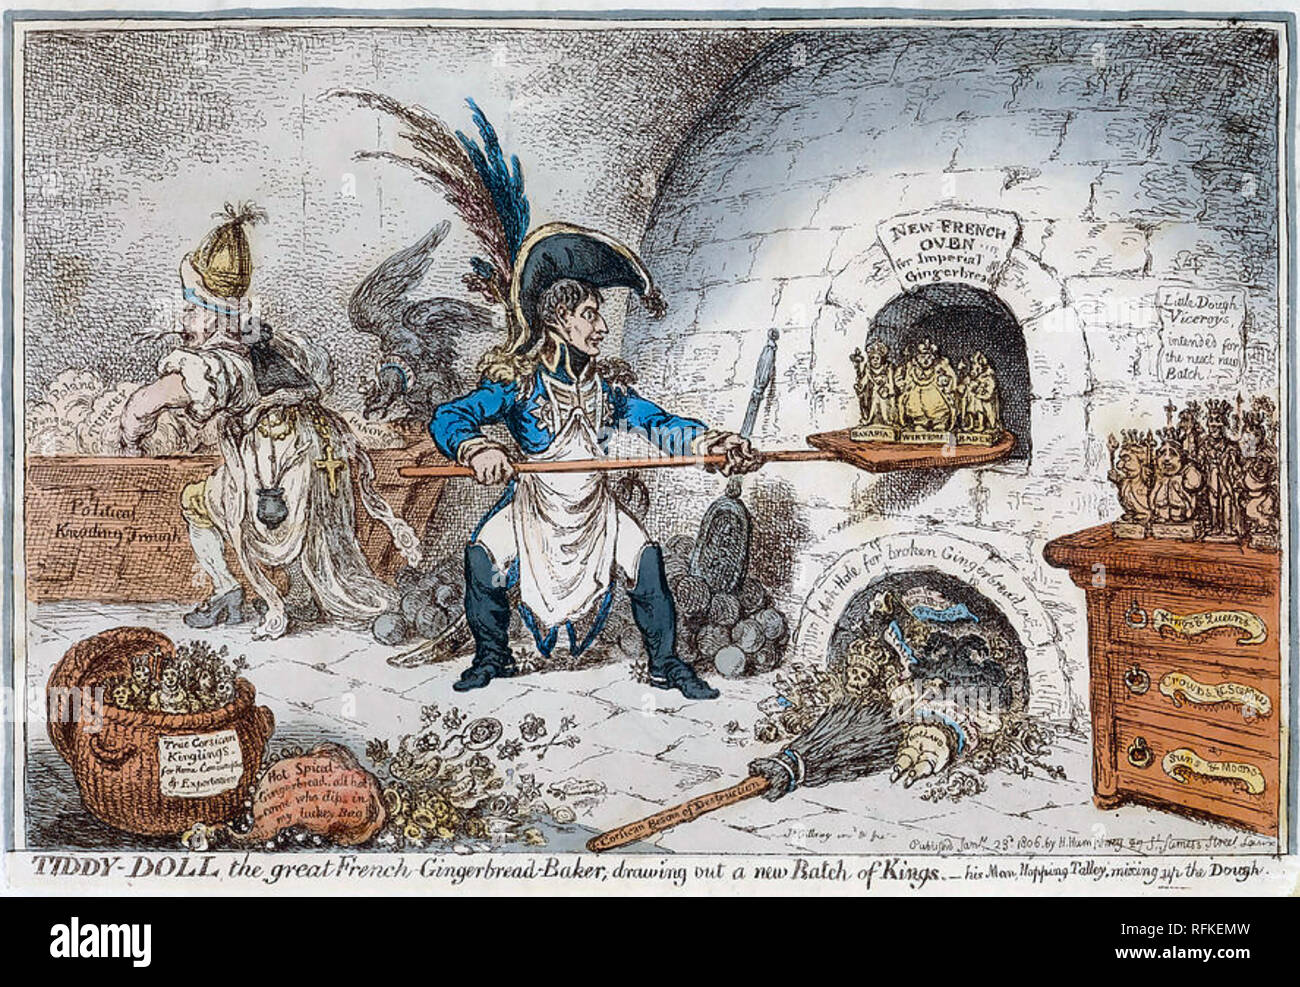 NAPOLEON ALS DEN INGWER BROTBACKAUTOMAT ein George Cruickshank Cartoon über 1814 zeigt Napoleon neuen Herrscher für seine eroberten Gebiete. Stockfoto